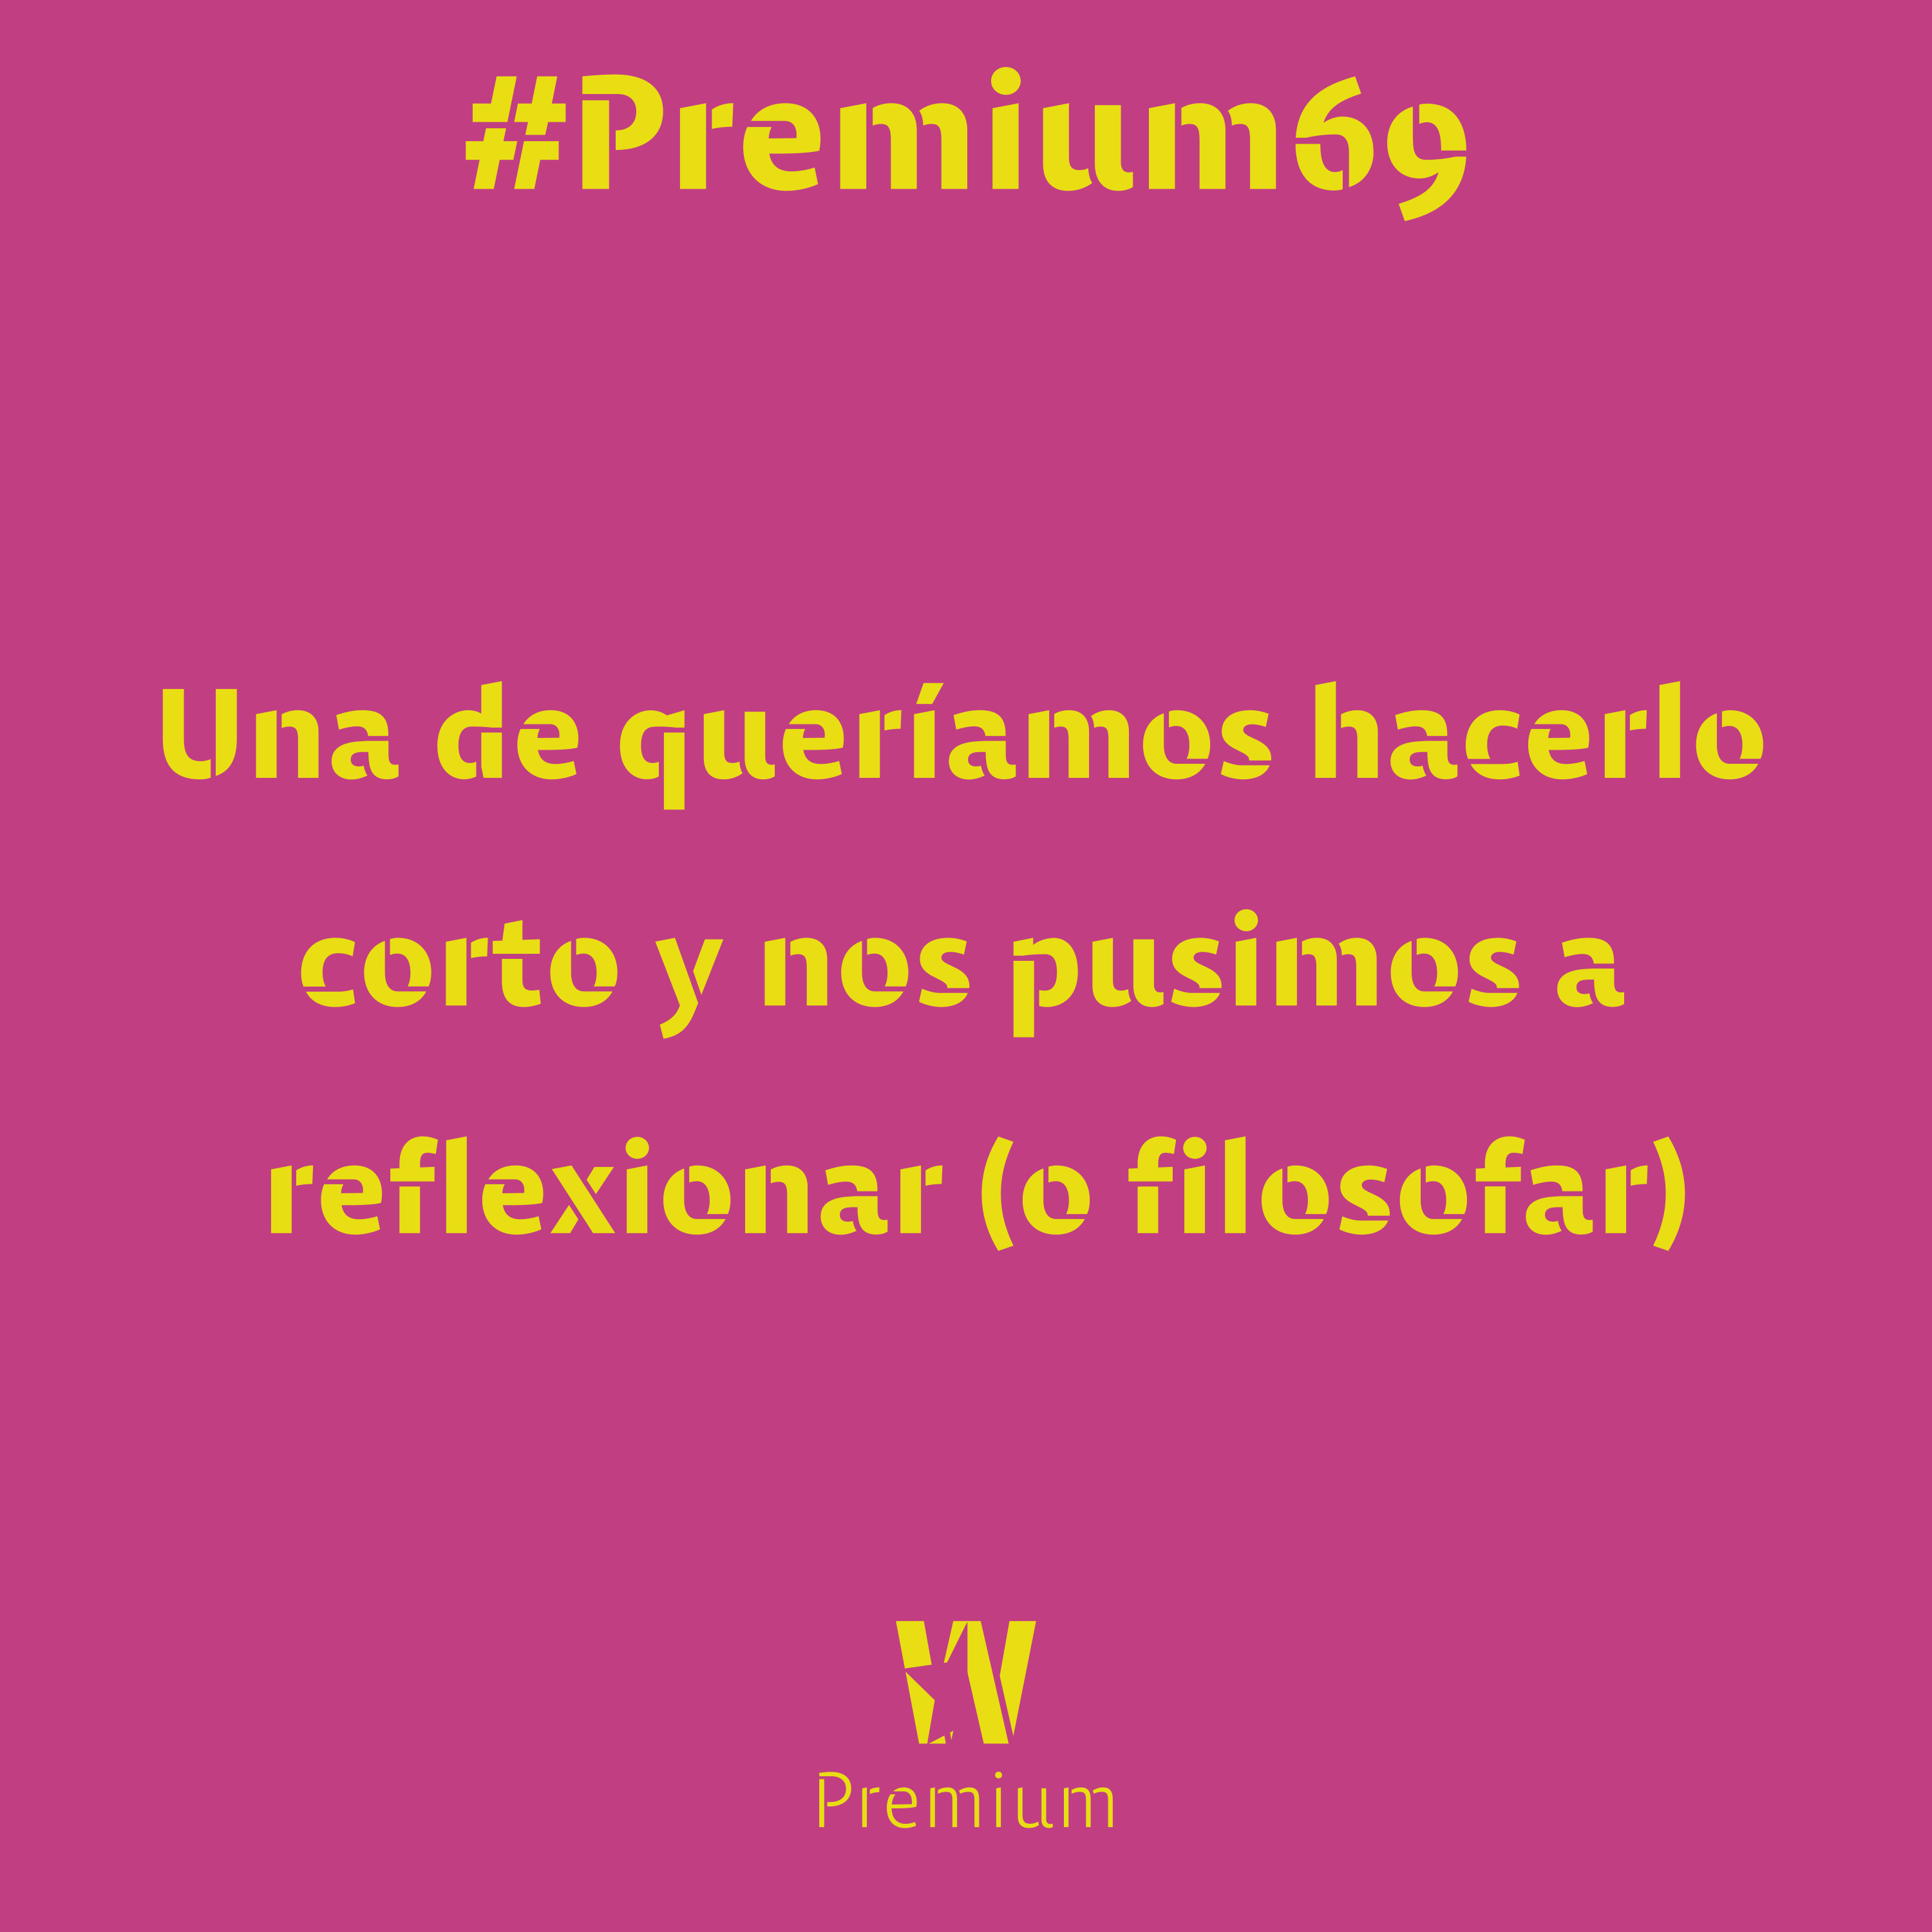 #Premium69 - Una de queríamos hacerlo corto y nos pusimos a reflexionar (o filosofar)